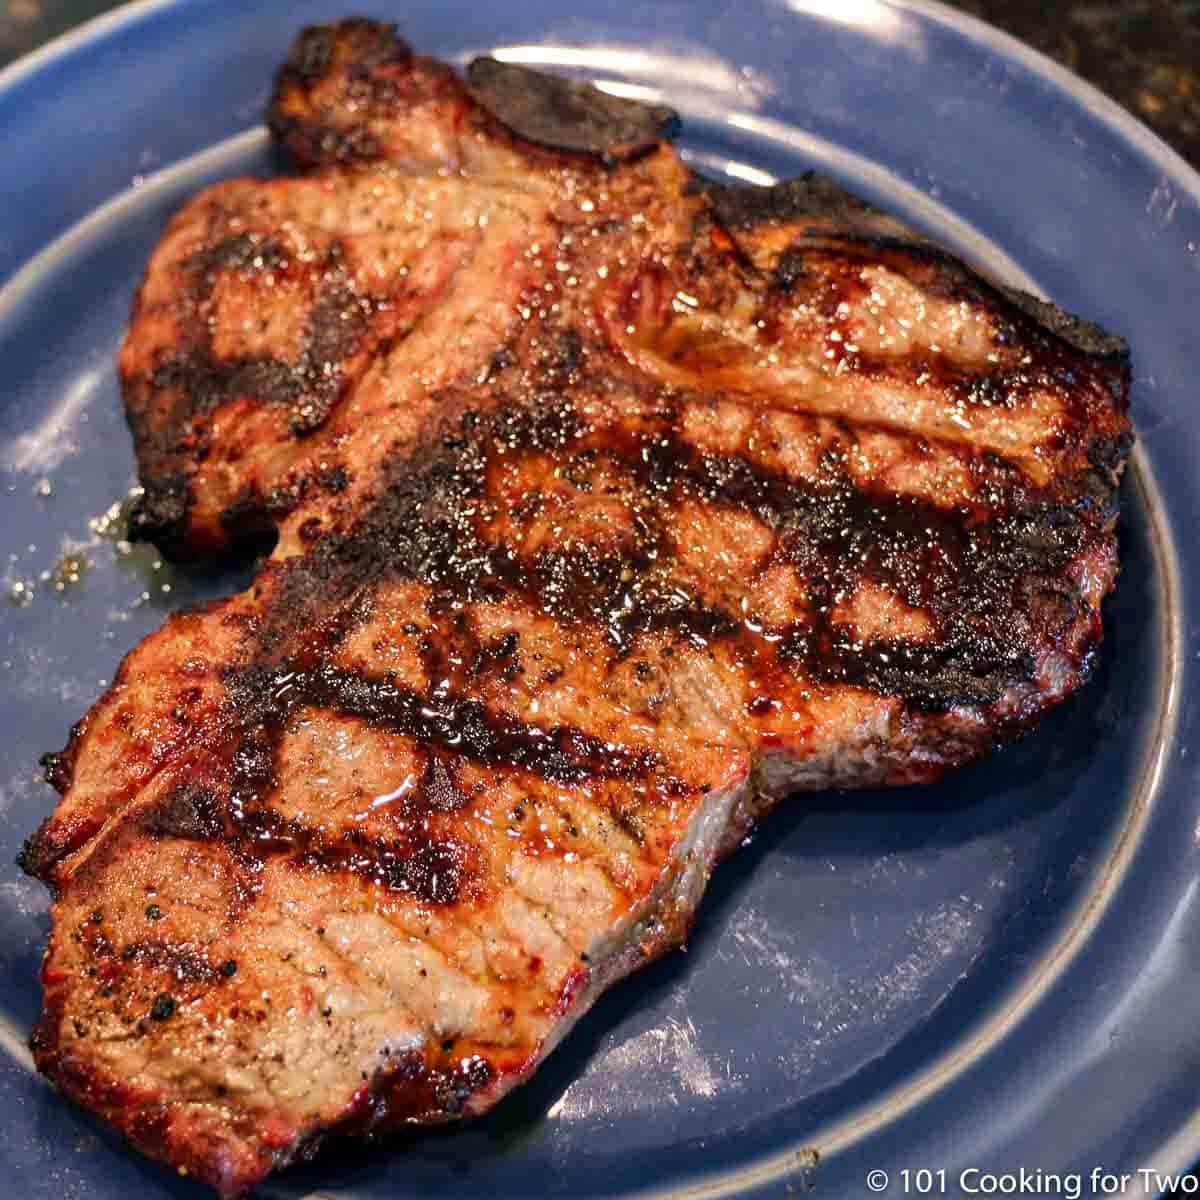 porterhouse steak on blue plate.